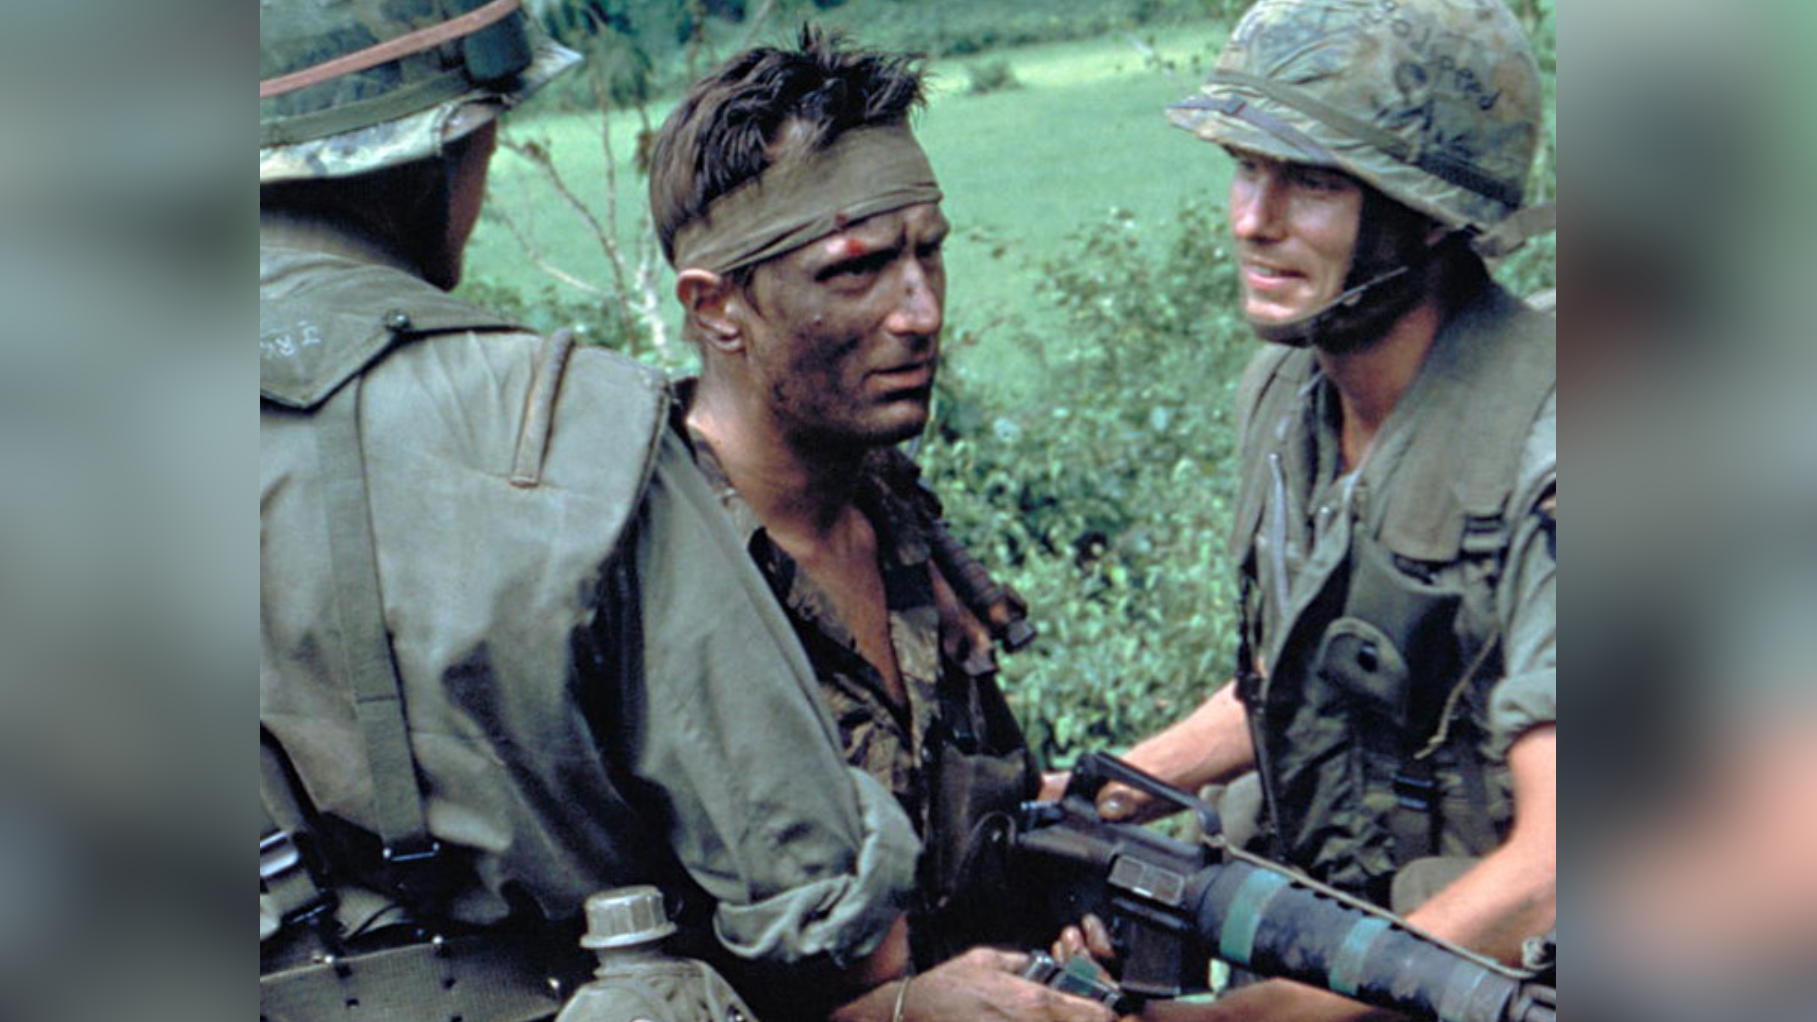 Zdjęcie przedstawia trzech żołnierzy. Dwaj po bokach mają kamizelki i hełmy moro. Żołnierz po środku ma brudną twarz, opaskę na czole, rozpiętą koszulę moro i broń w ręku. W tle jest zielone pole.